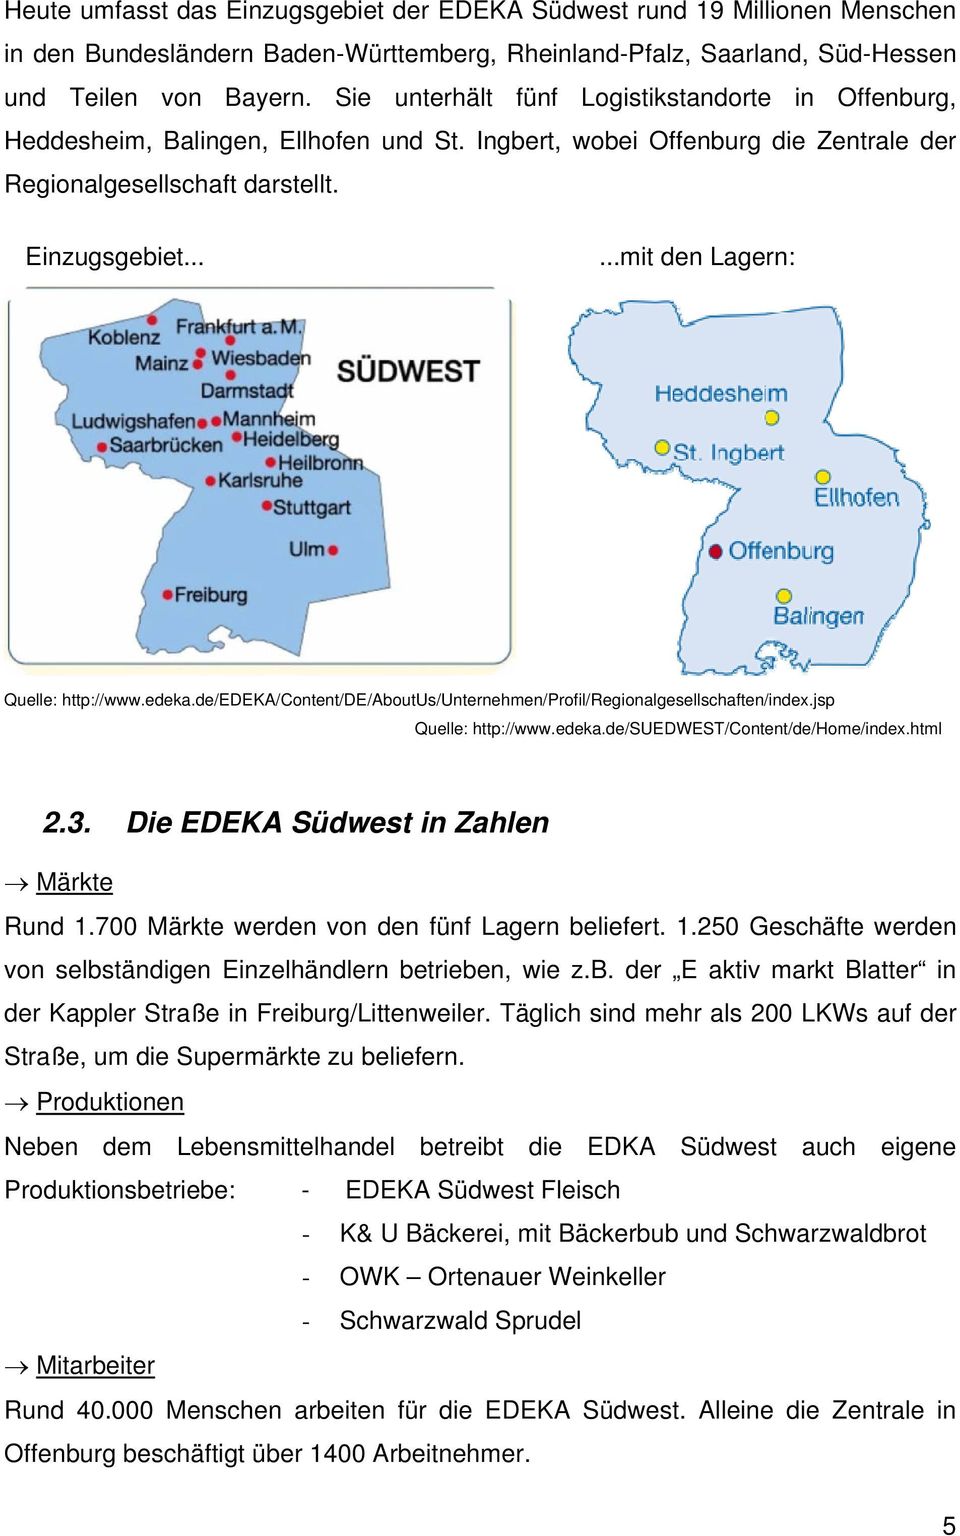 .....mit den Lagern: Quelle: http://www.edeka.de/edeka/content/de/aboutus/unternehmen/profil/regionalgesellschaften/index.jsp Quelle: http://www.edeka.de/suedwest/content/de/home/index.html 2.3.